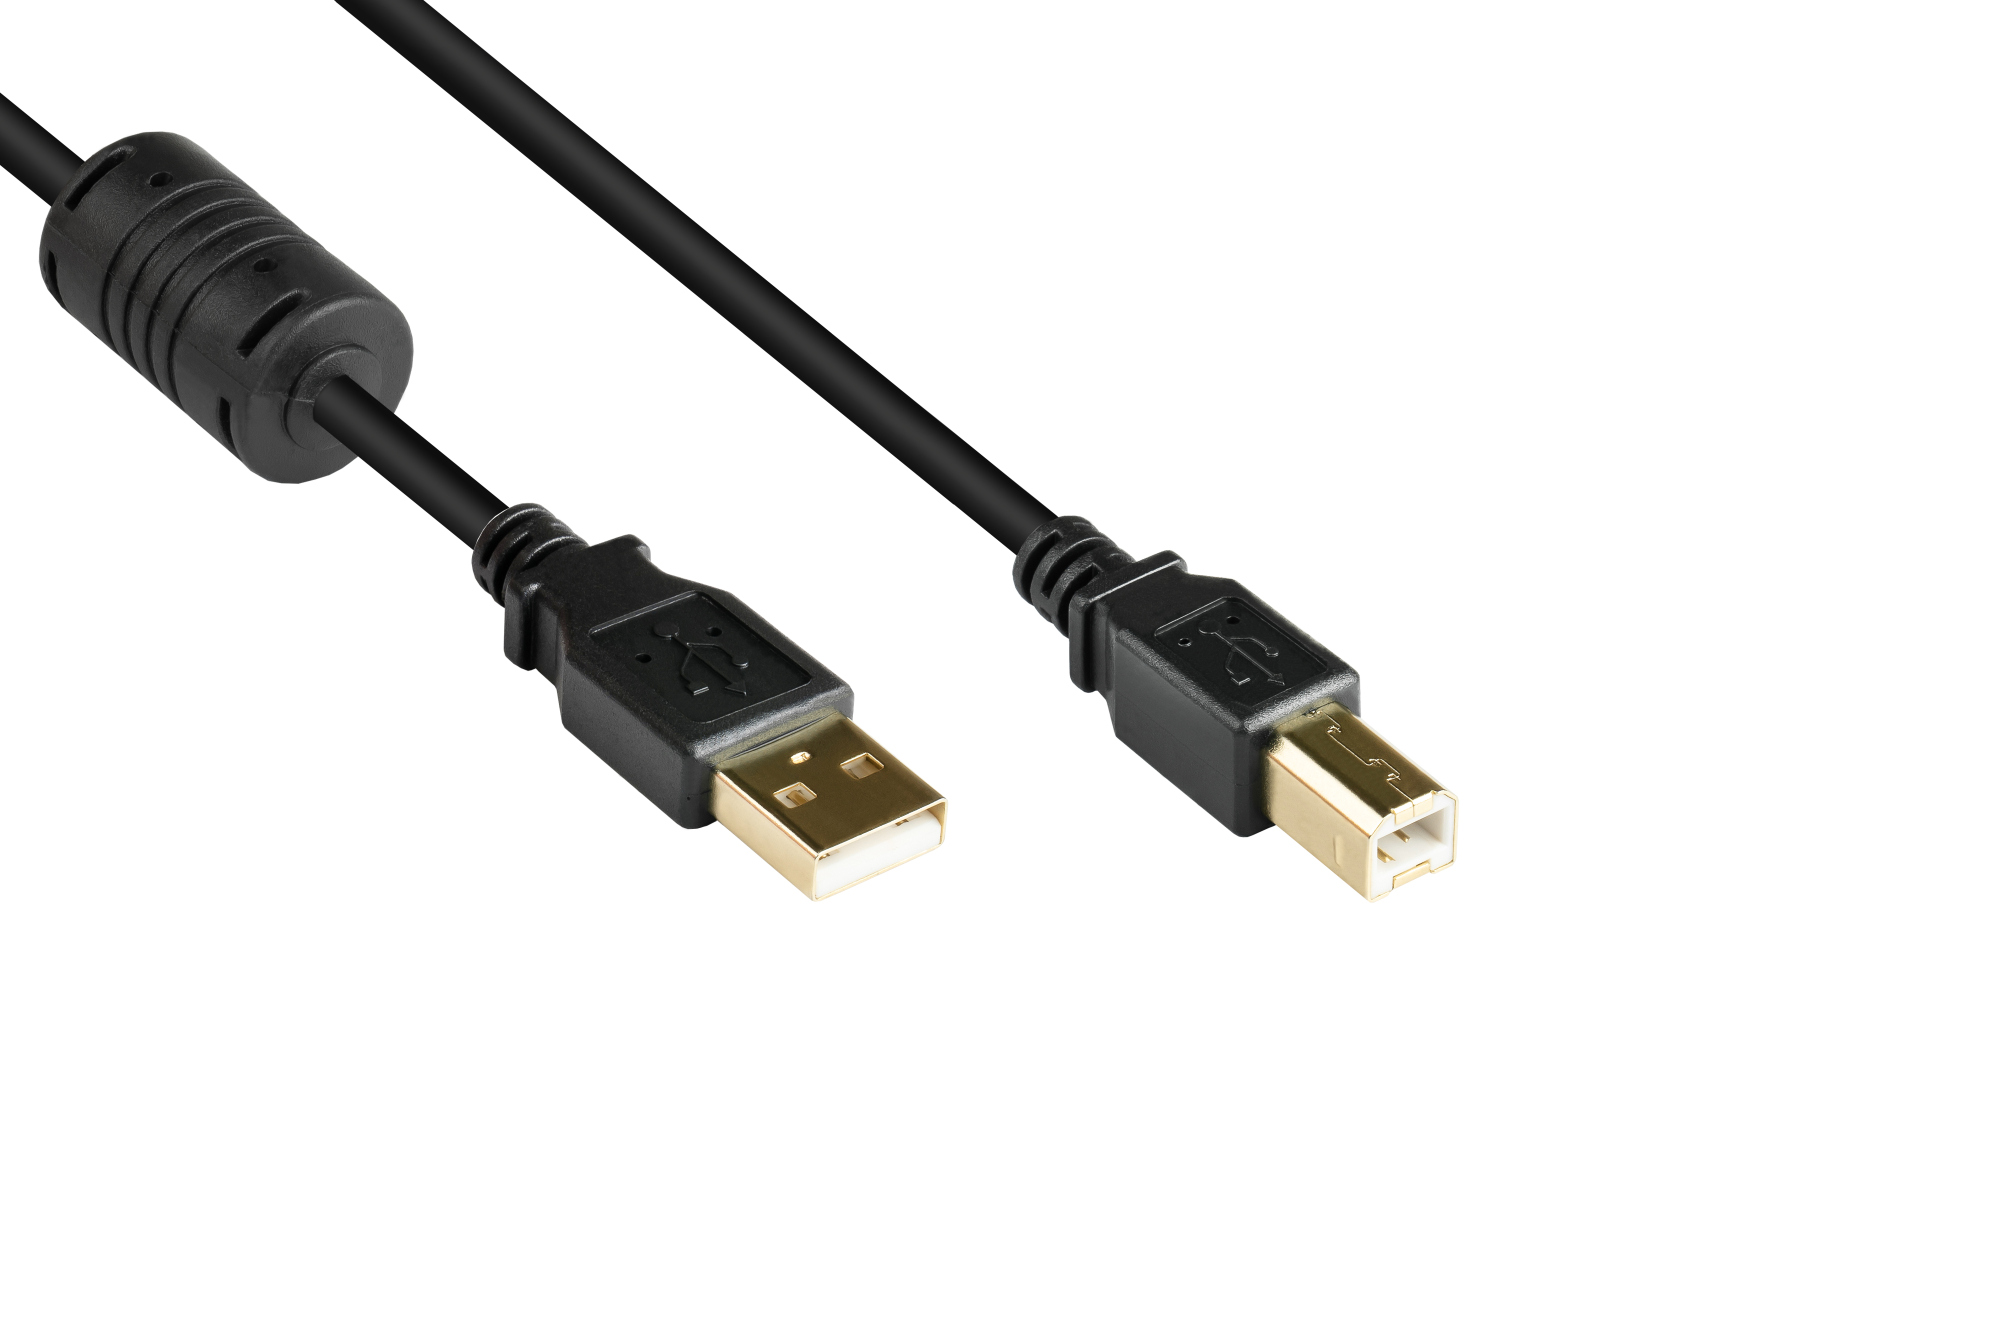 Anschlusskabel USB 2.0 Stecker A an Stecker B, mit Ferritkern, vergoldet, schwarz, 5m, Good Connecti